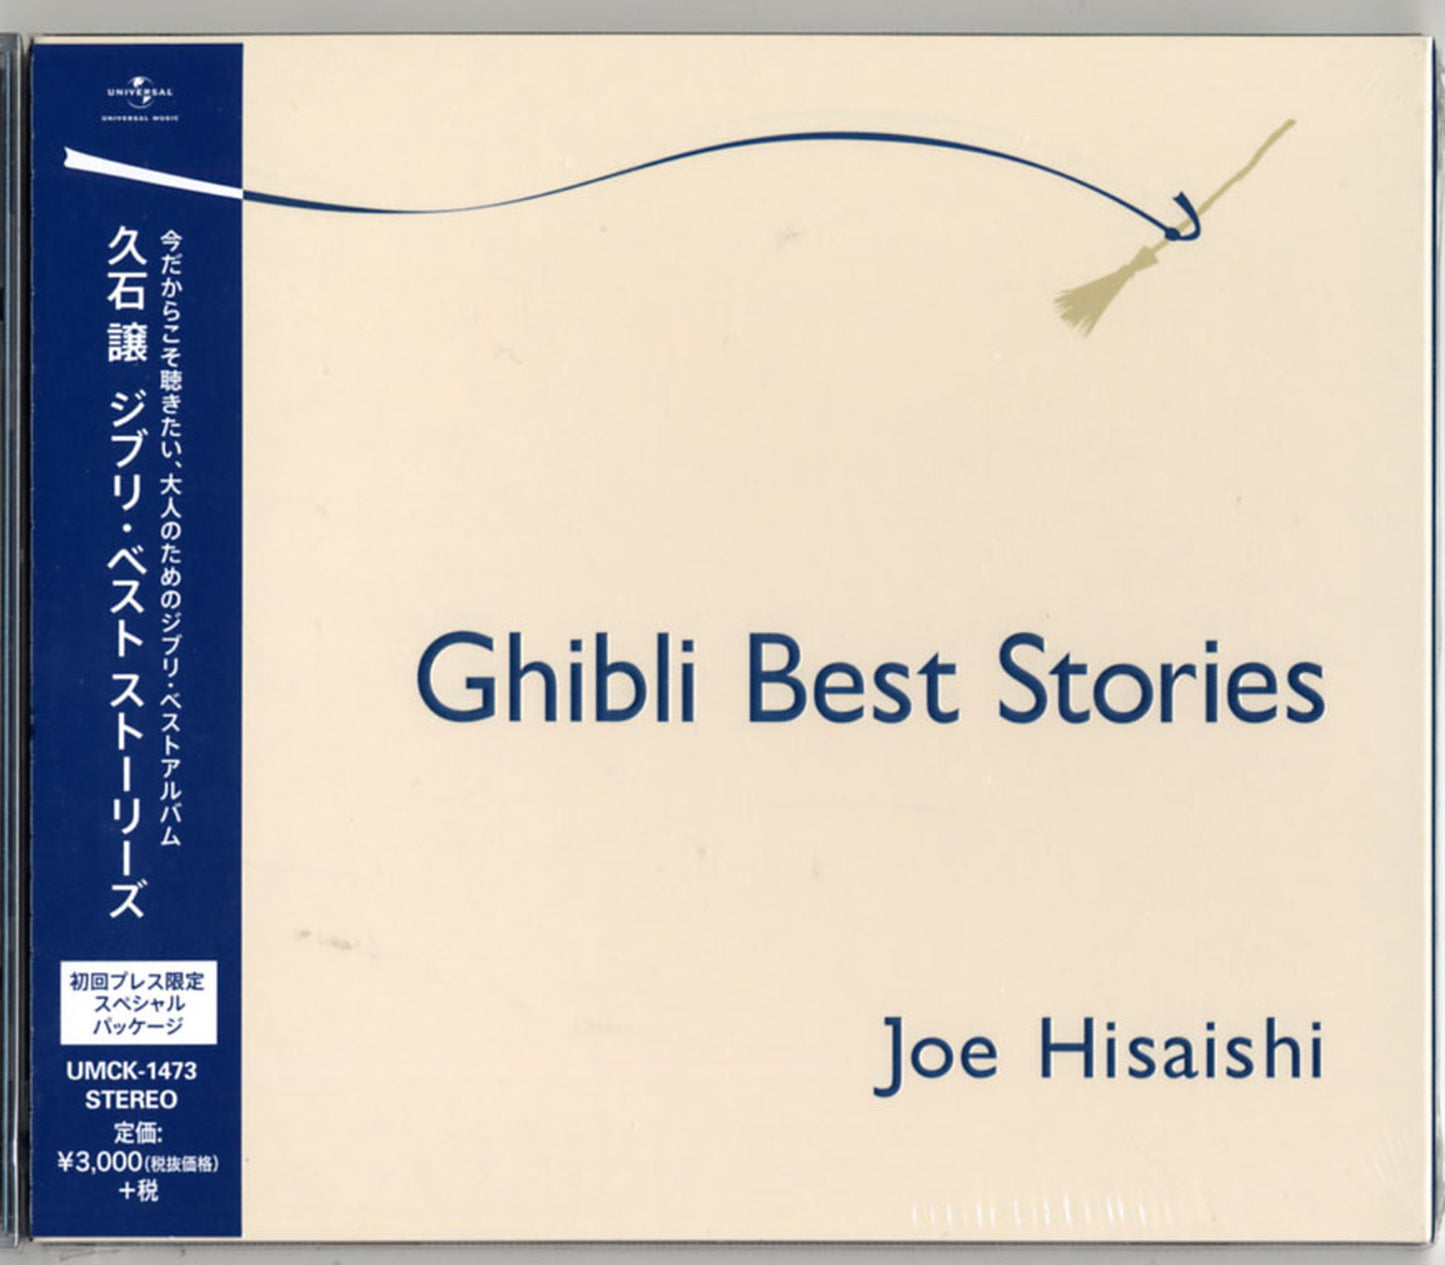 Joe Hisaishi - Ghibli Best Stories - Japan CD